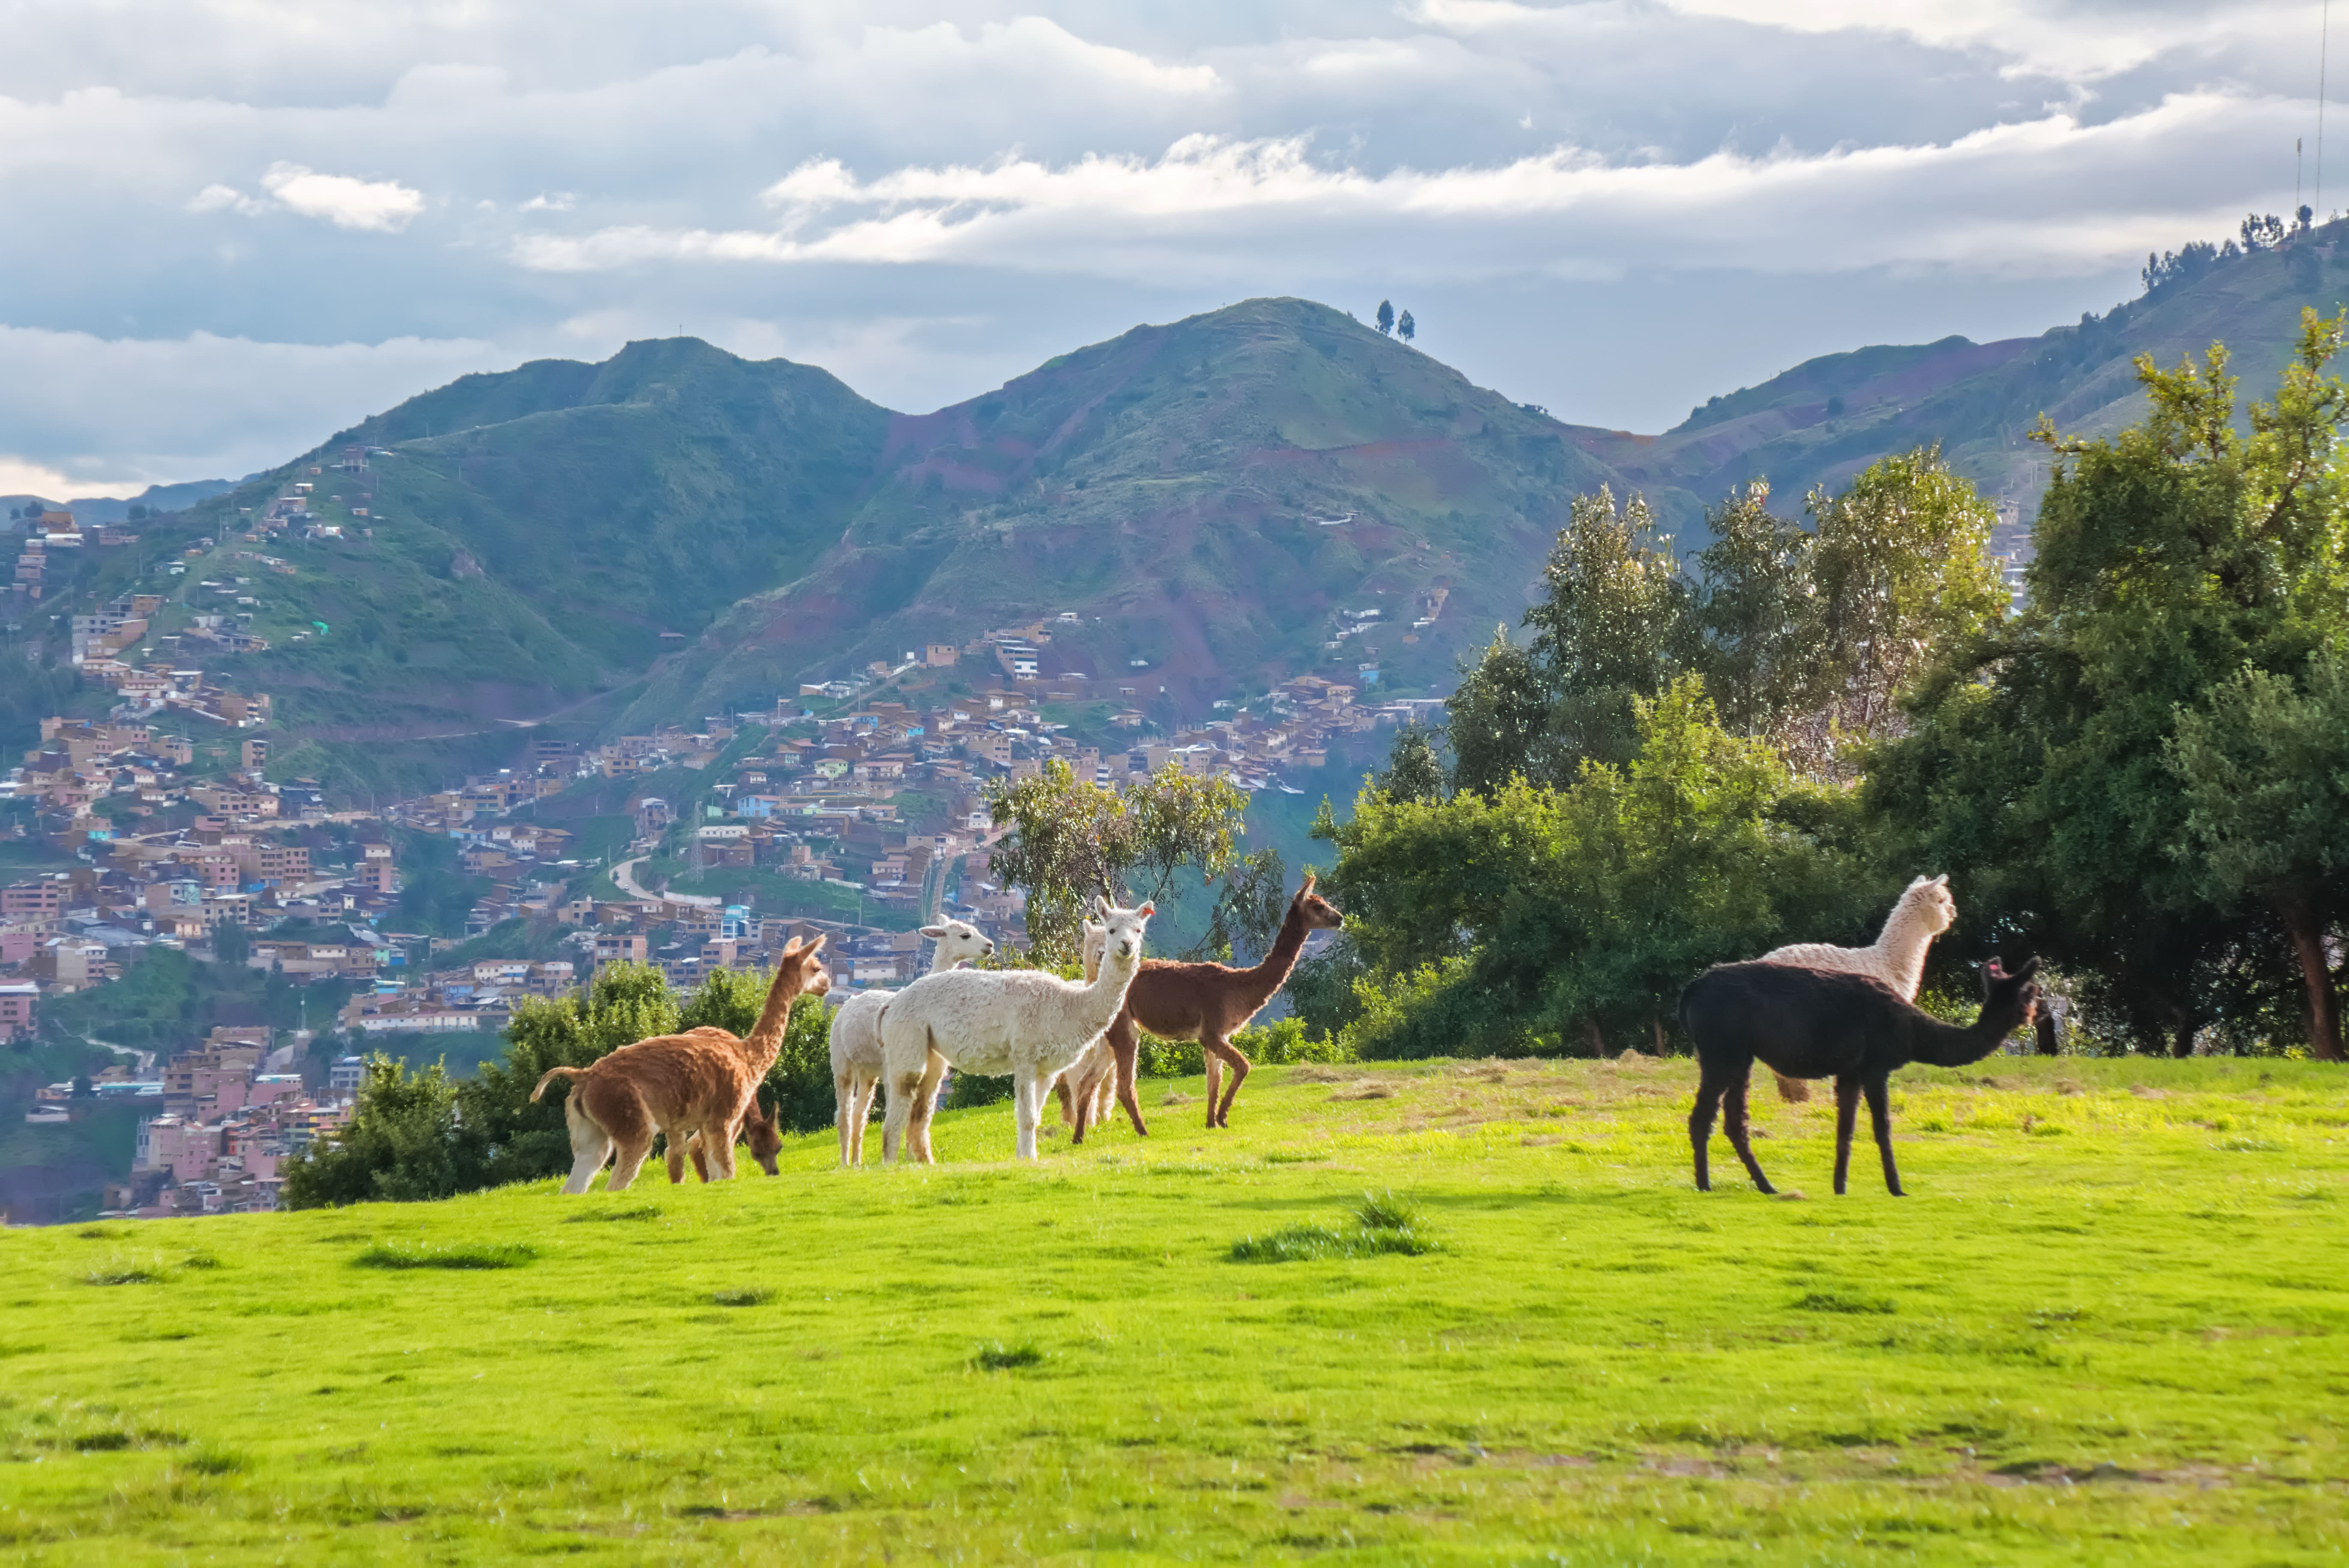 llamas-alpacas-sacsayhuaman-incas-ruins-peruvian-andes-cusco-peru.jpg